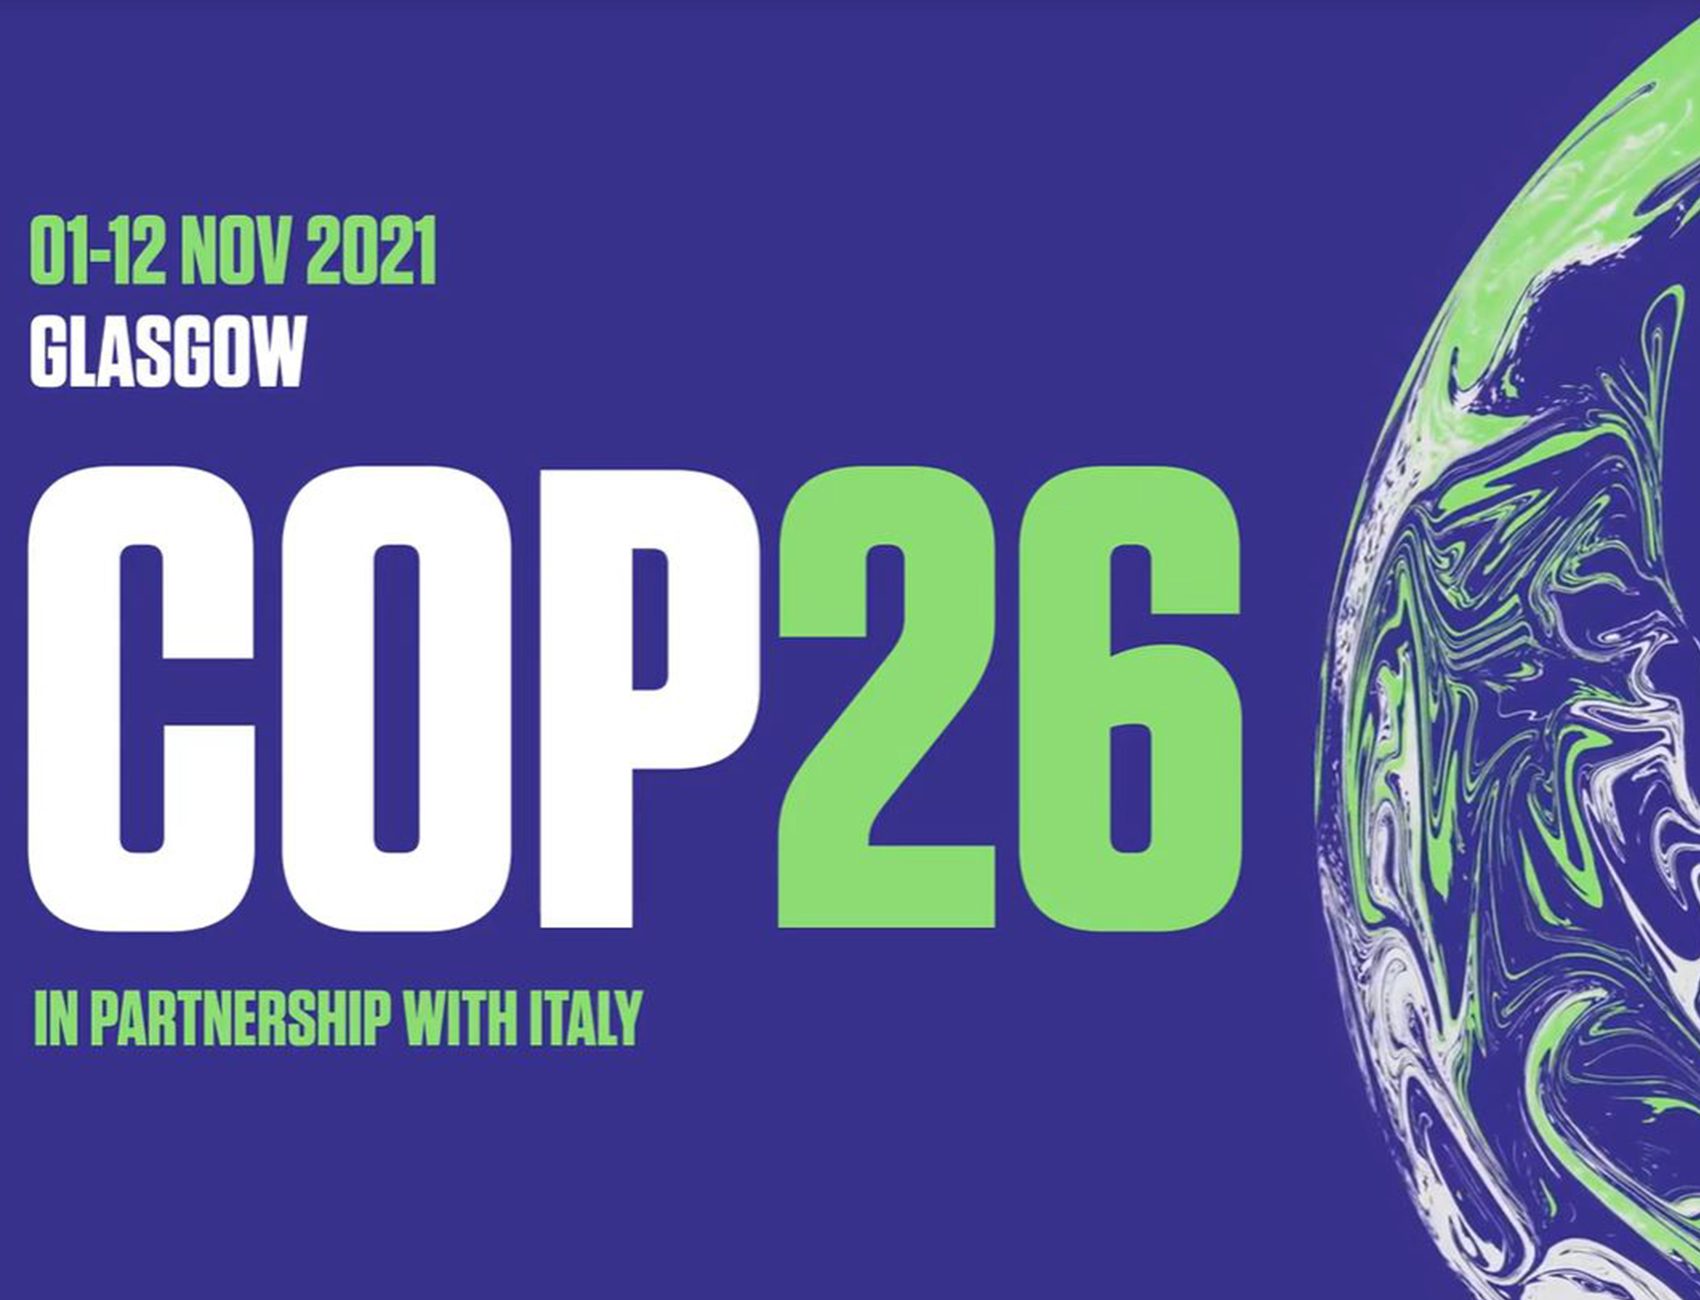 ESG welcomes global work towards COP26